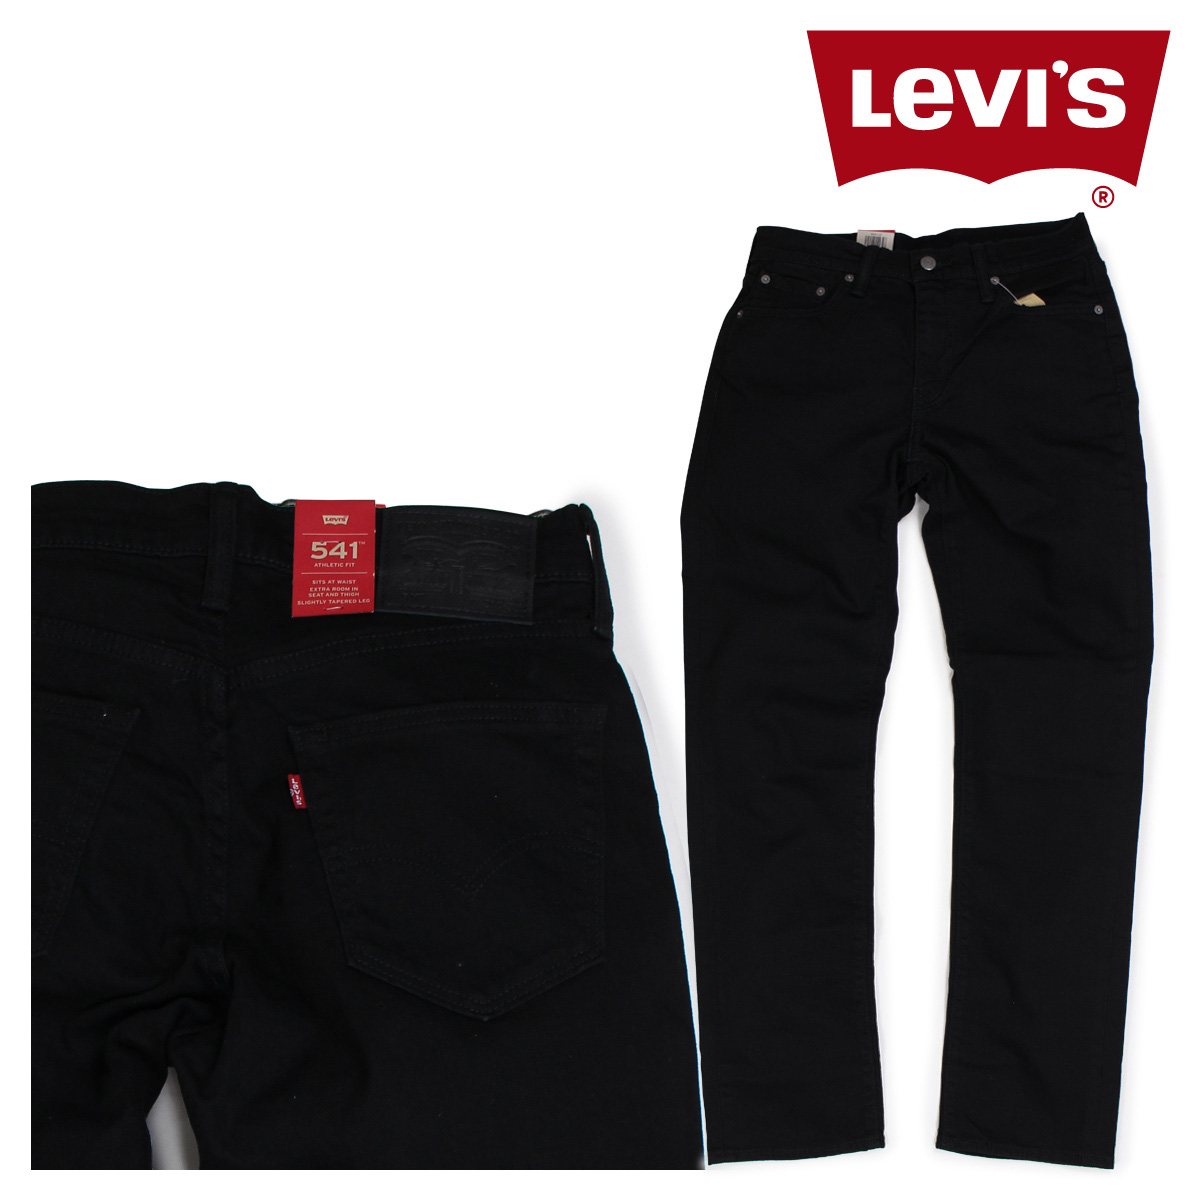 levis 541 black